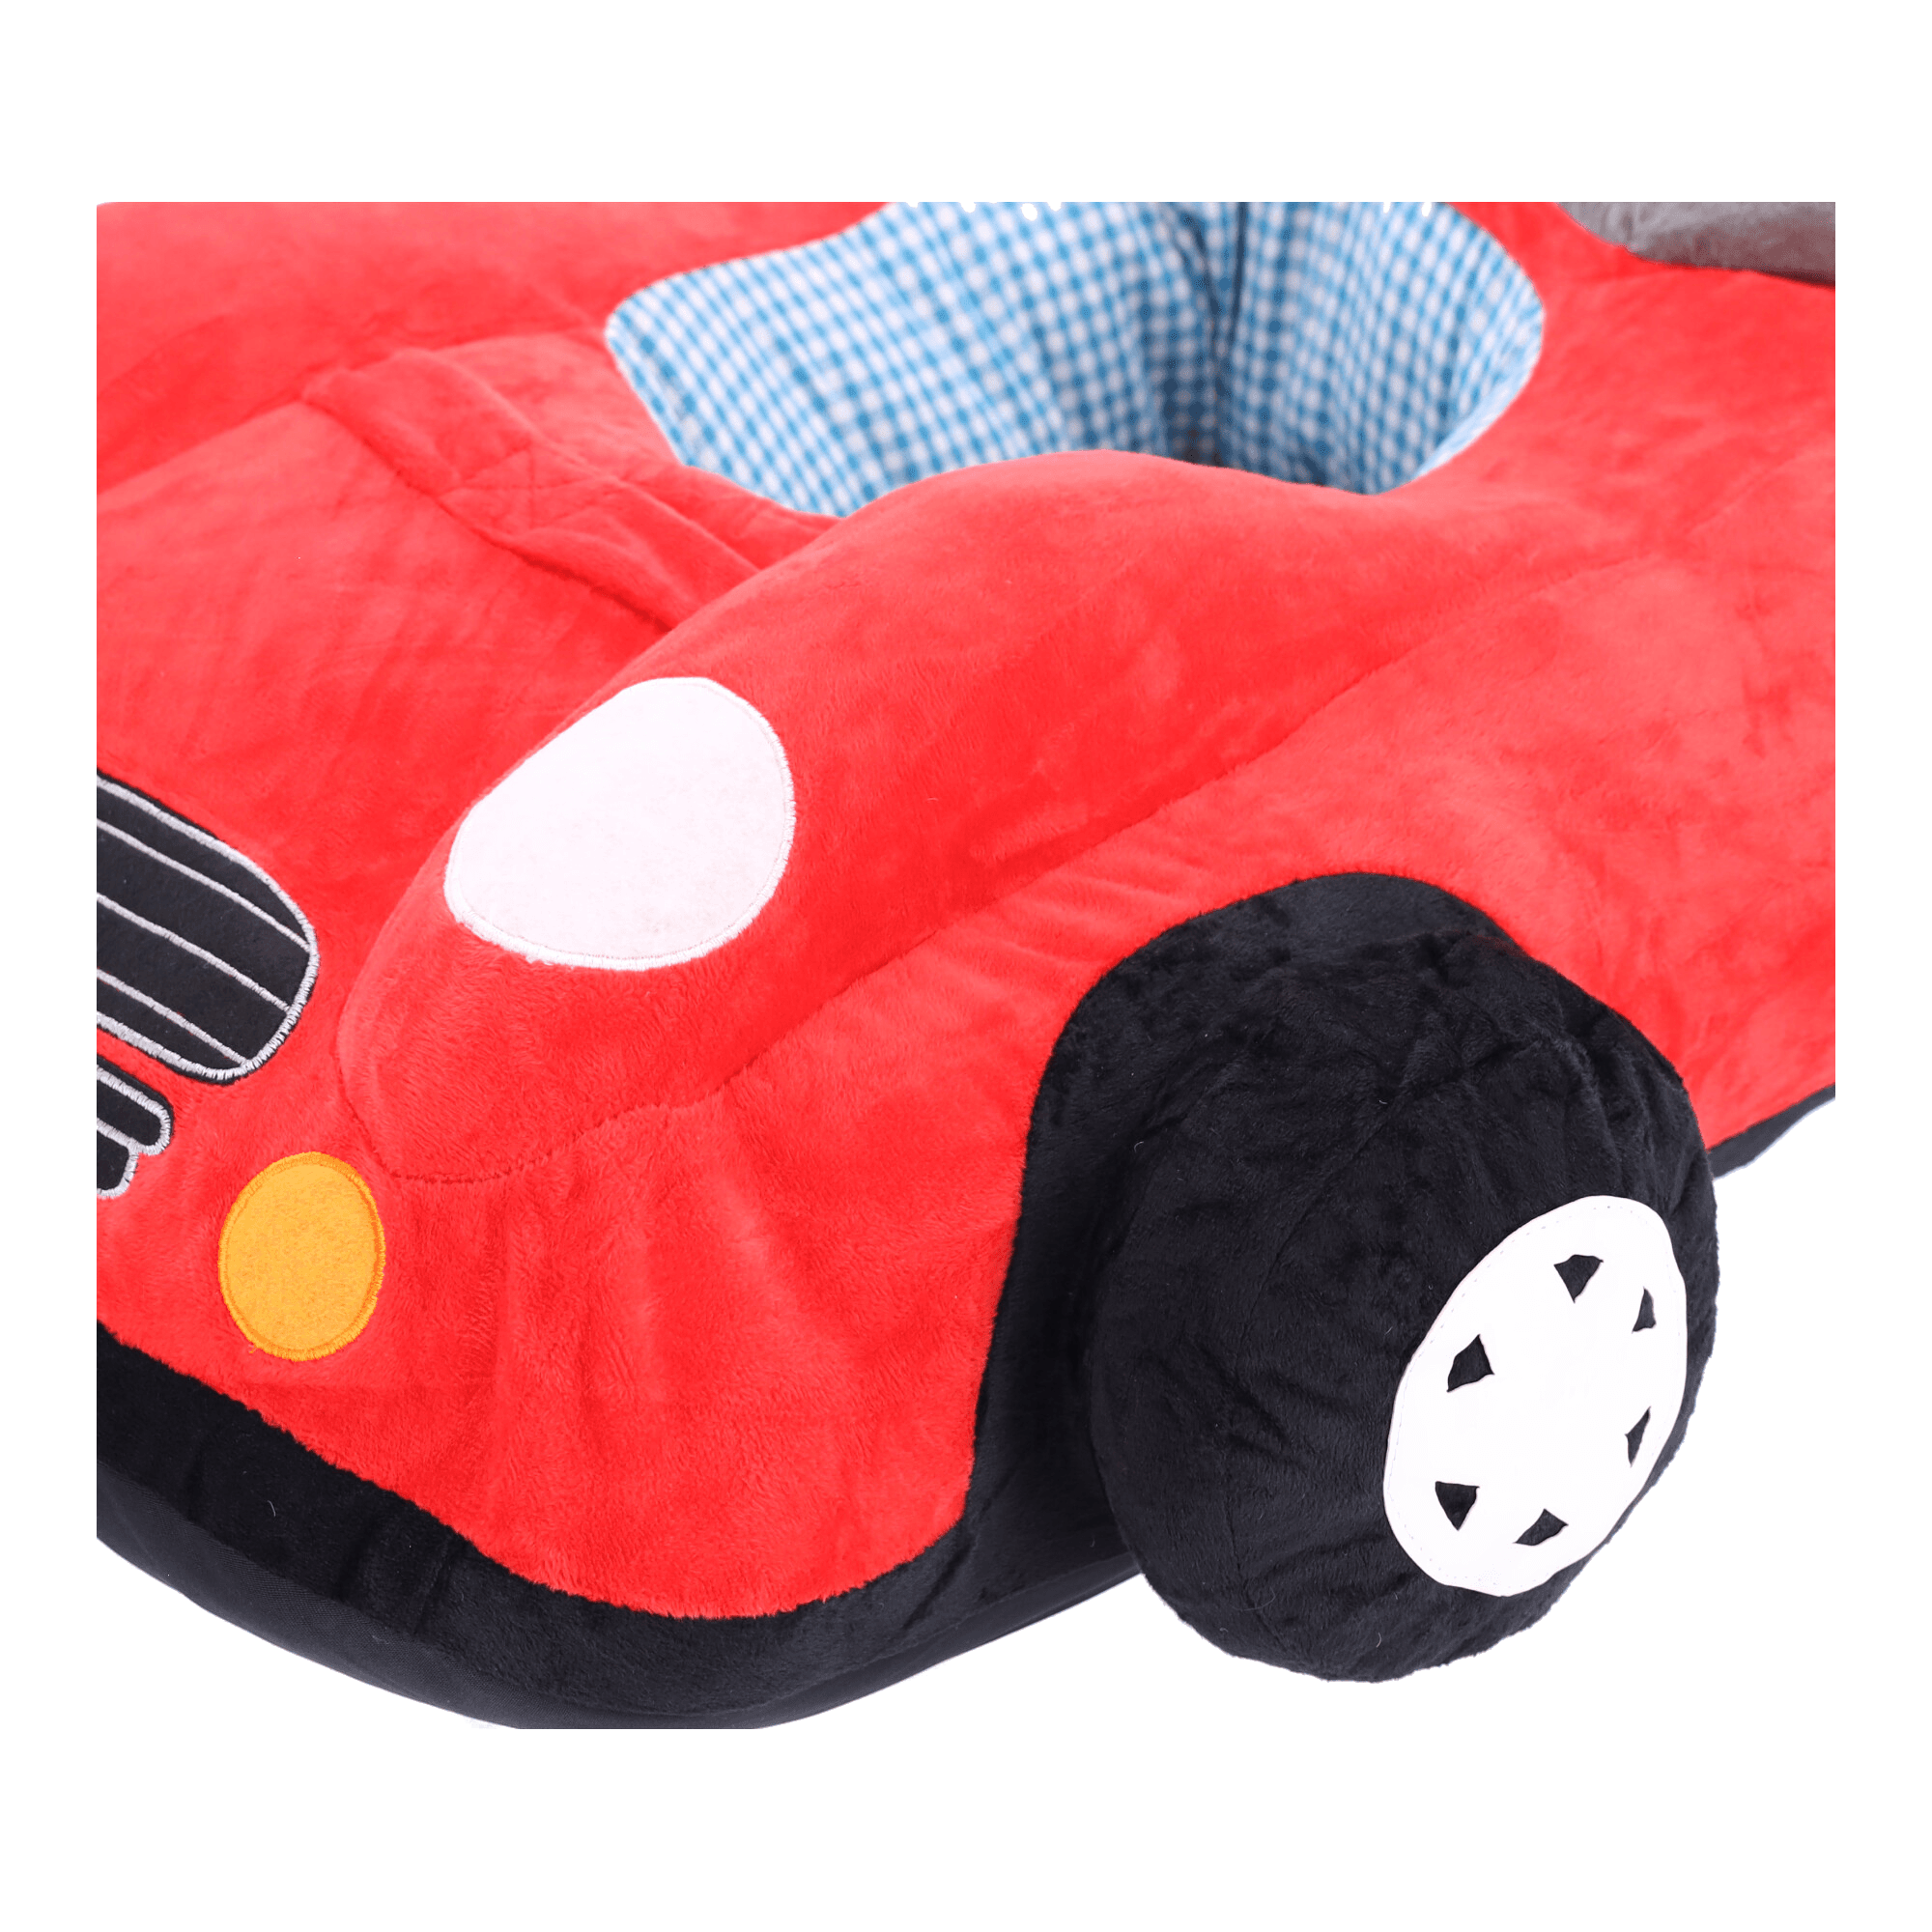 Pluszowe siedzisko dla dzieci Samochód - czerwone